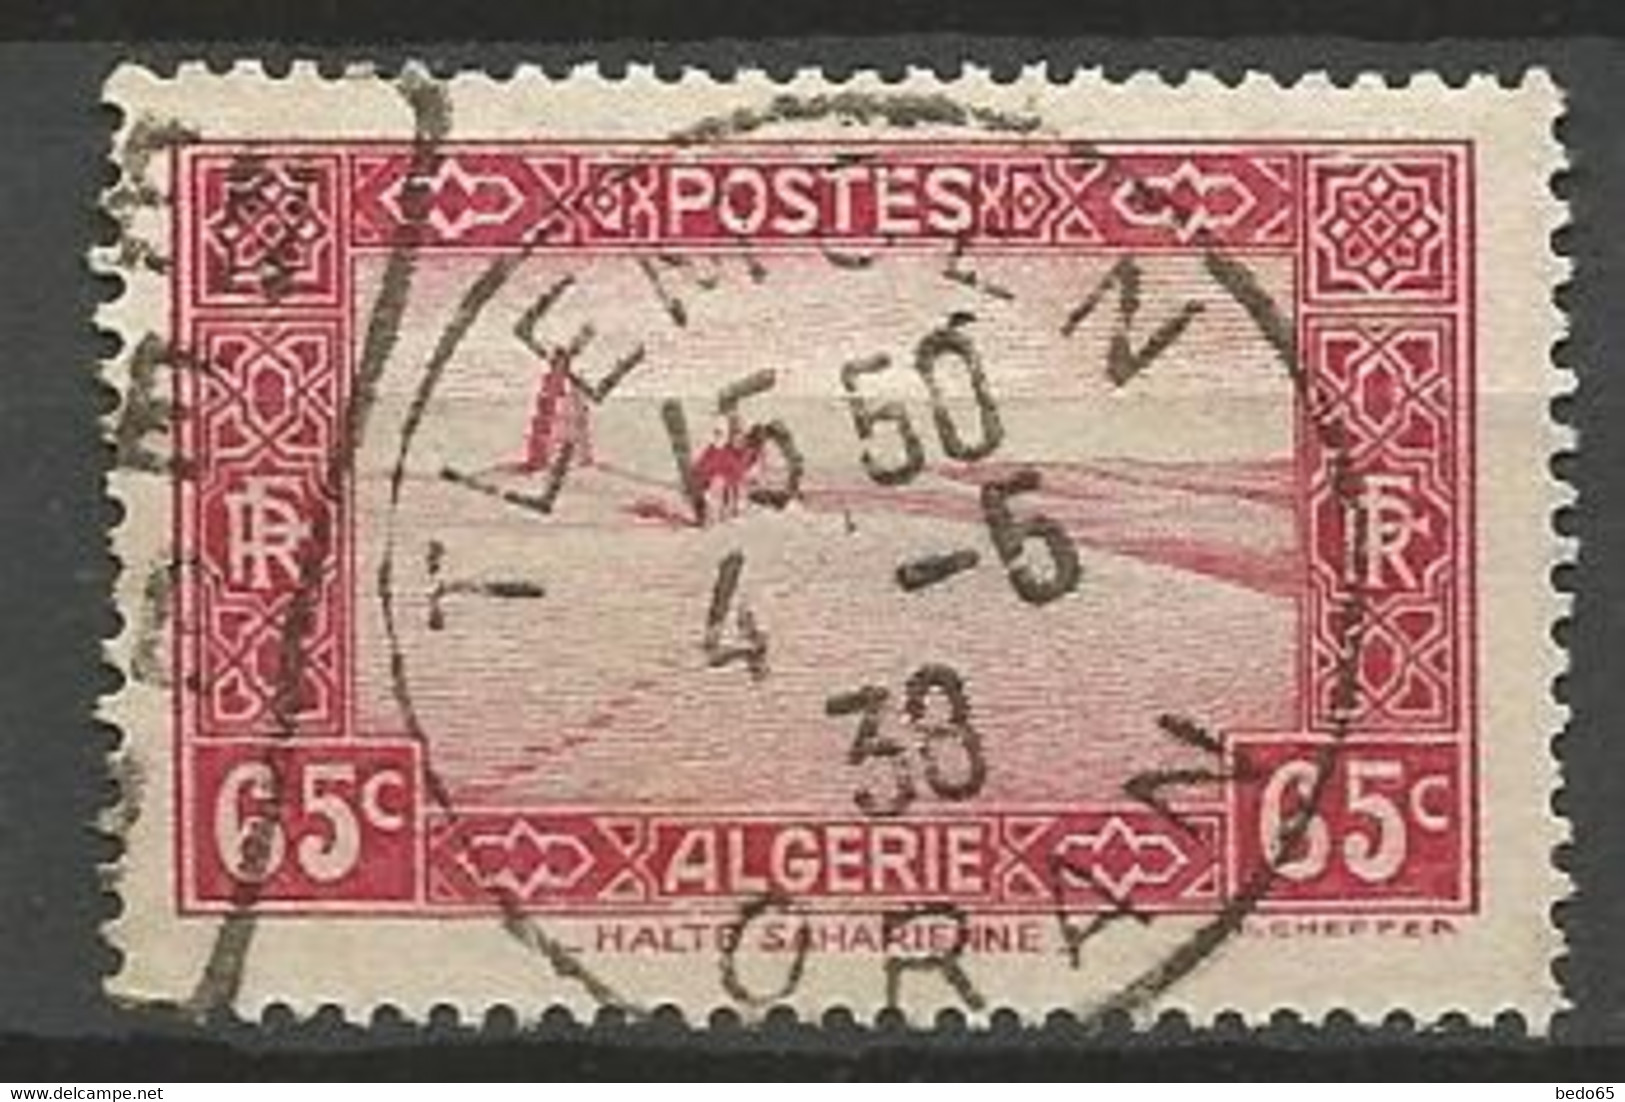 ALGERIE N° 113A CACHET TLEMCEN - Used Stamps